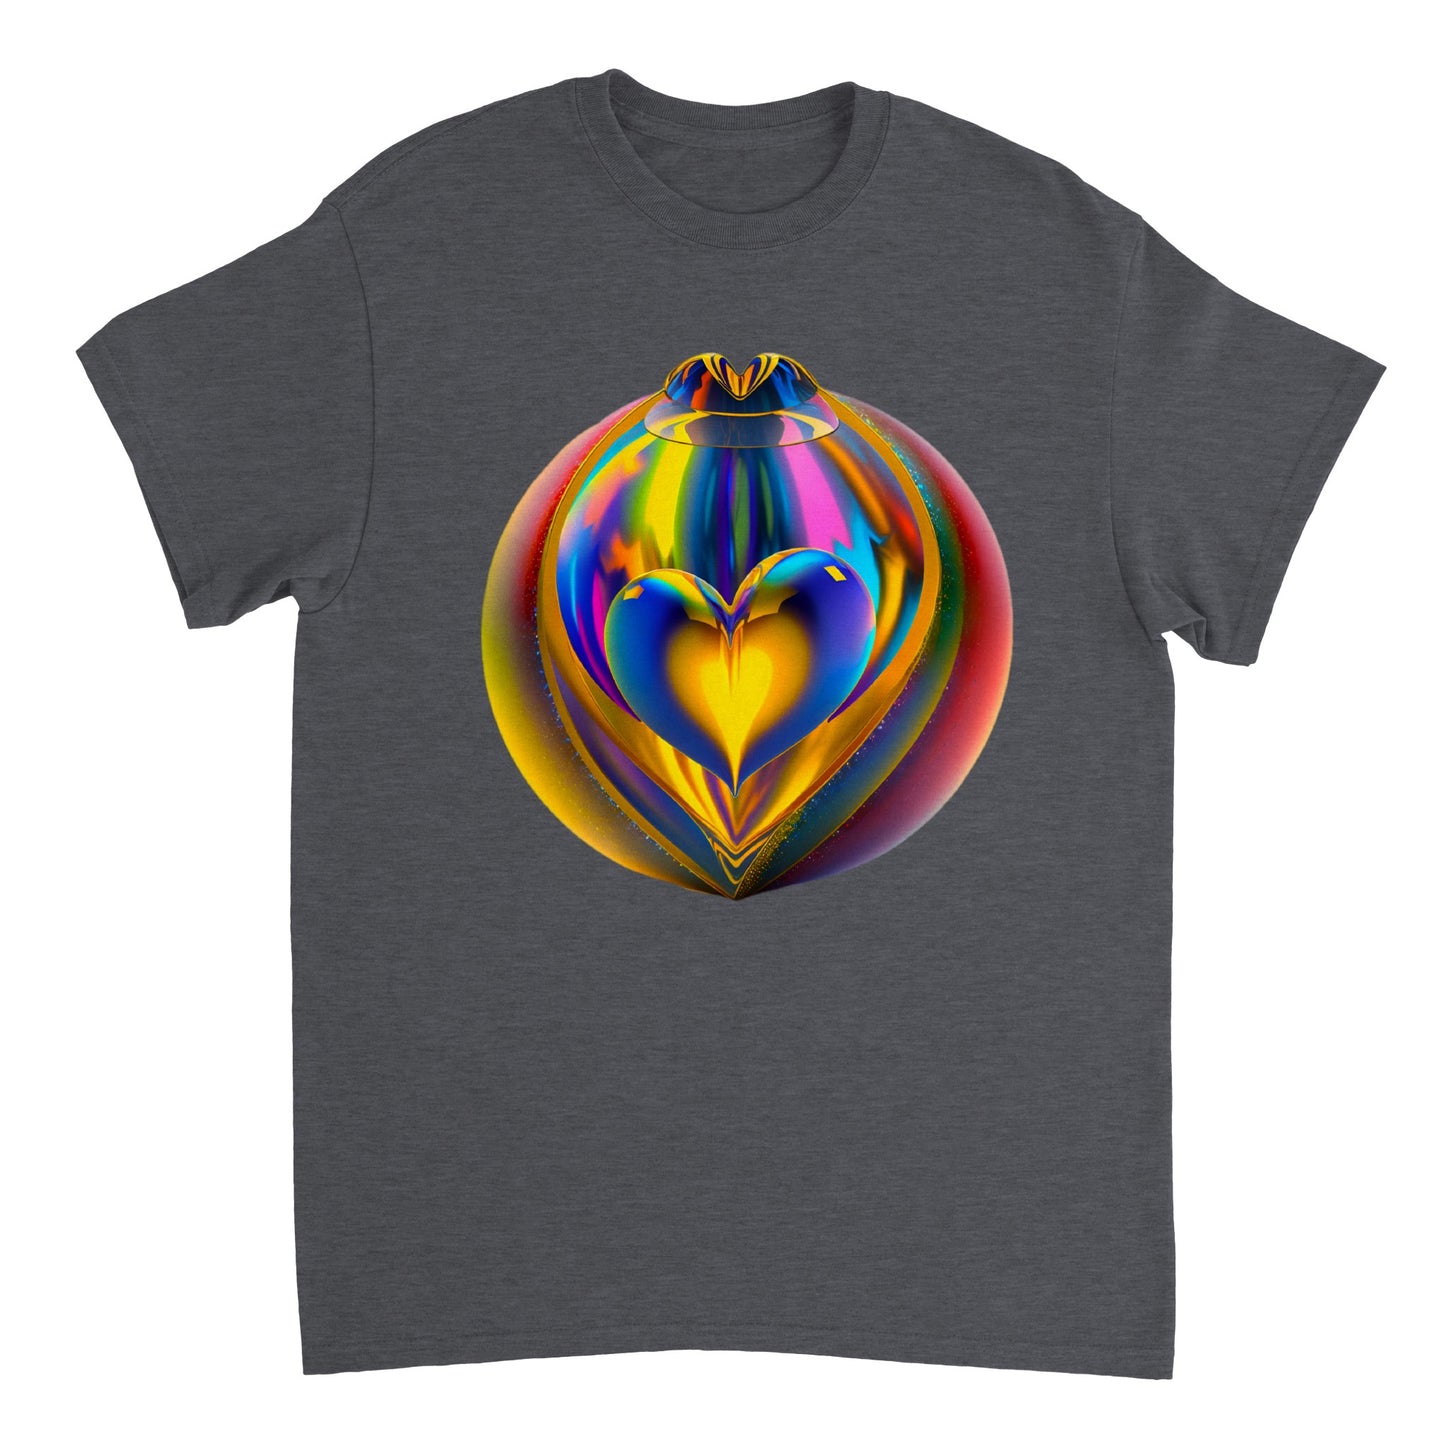 Love Heart - Heavyweight Unisex Crewneck T-shirt 40